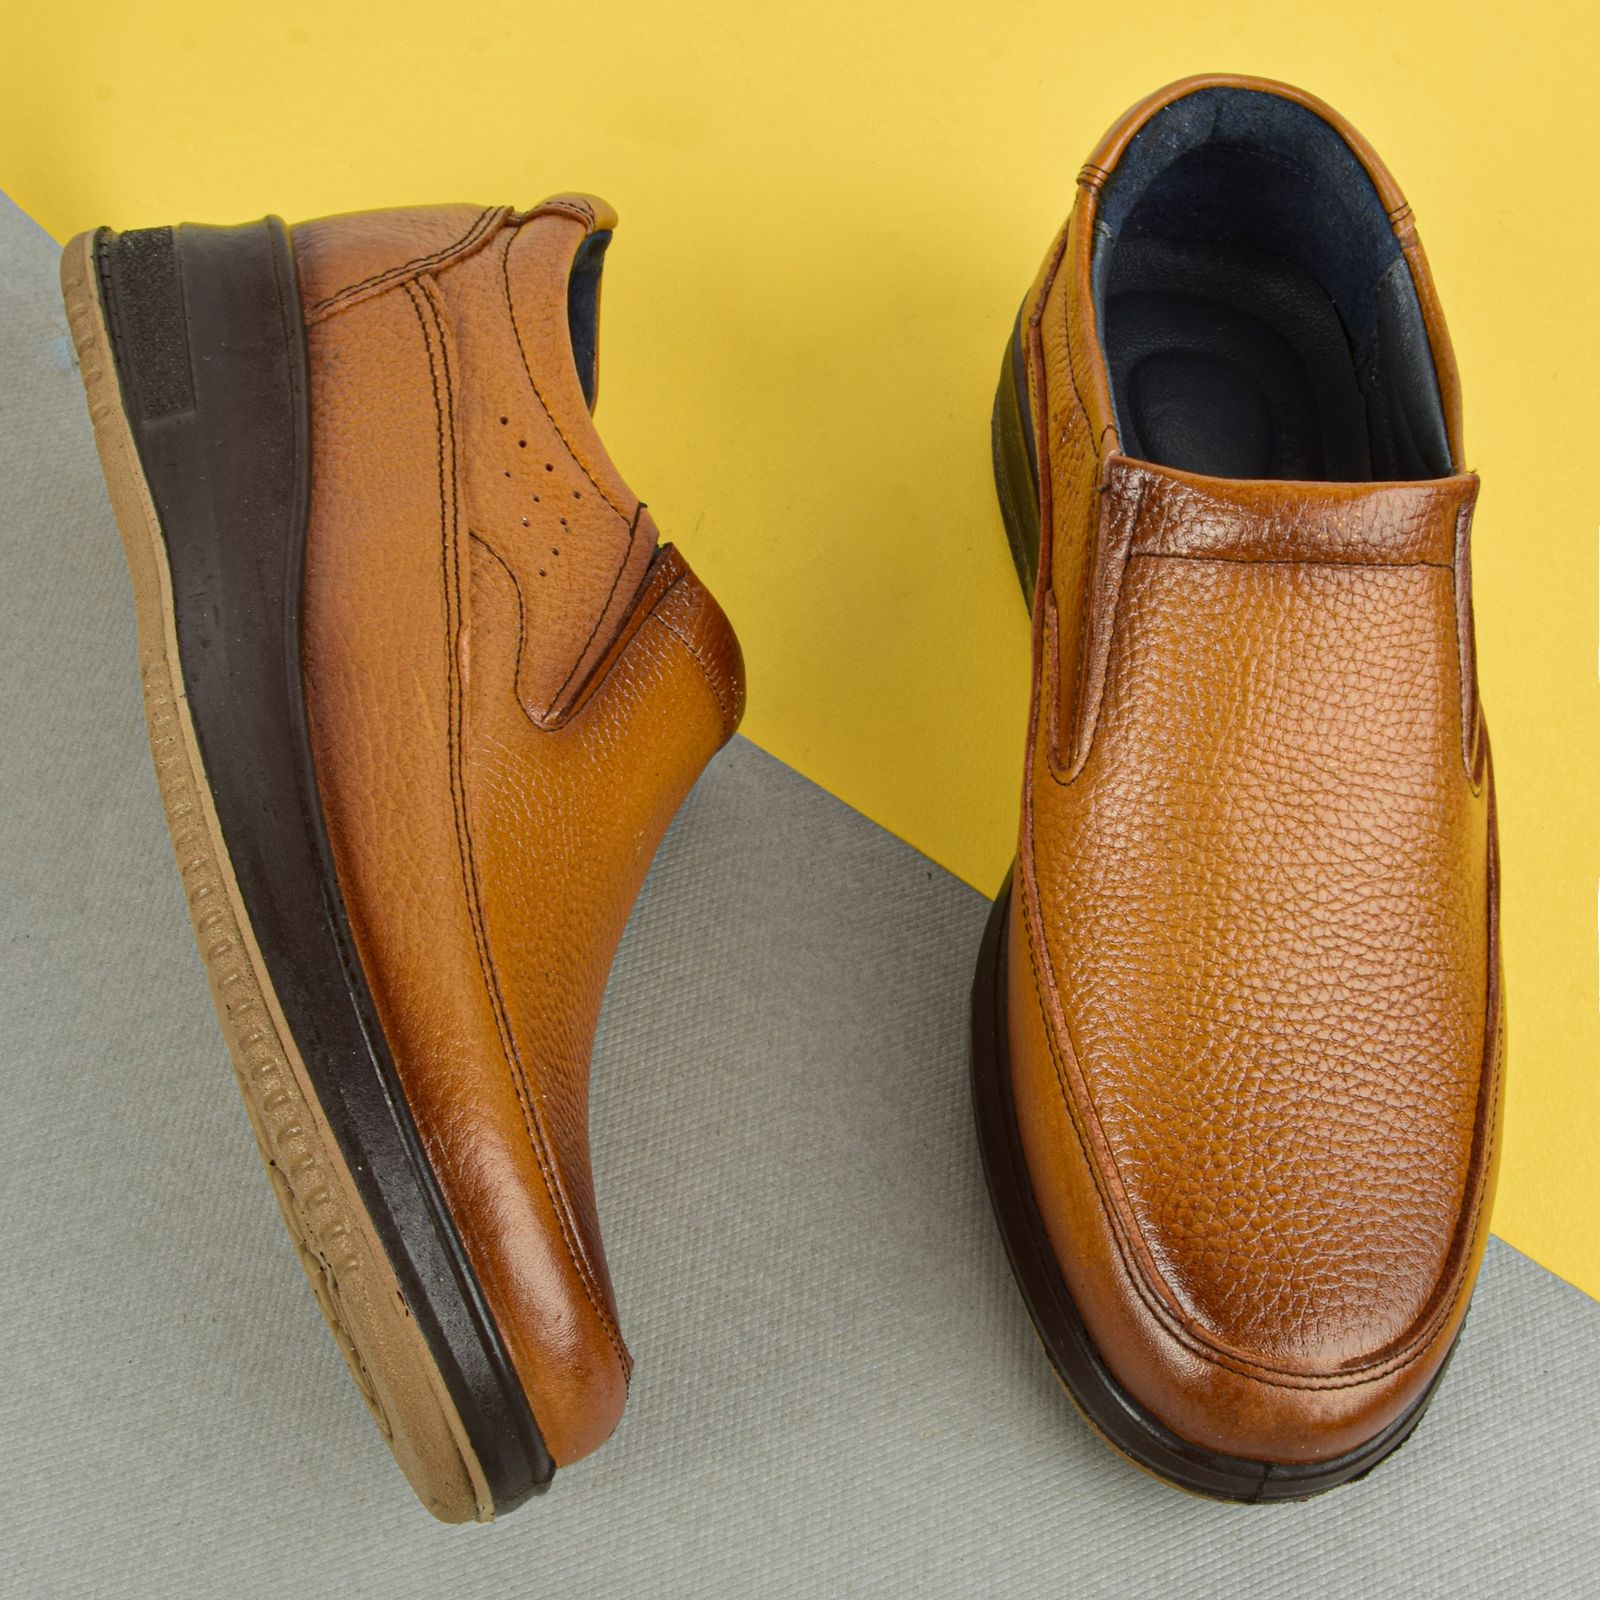 کفش روزمره مردانه مدل سهوآریتا کد HN.1773 -  - 5